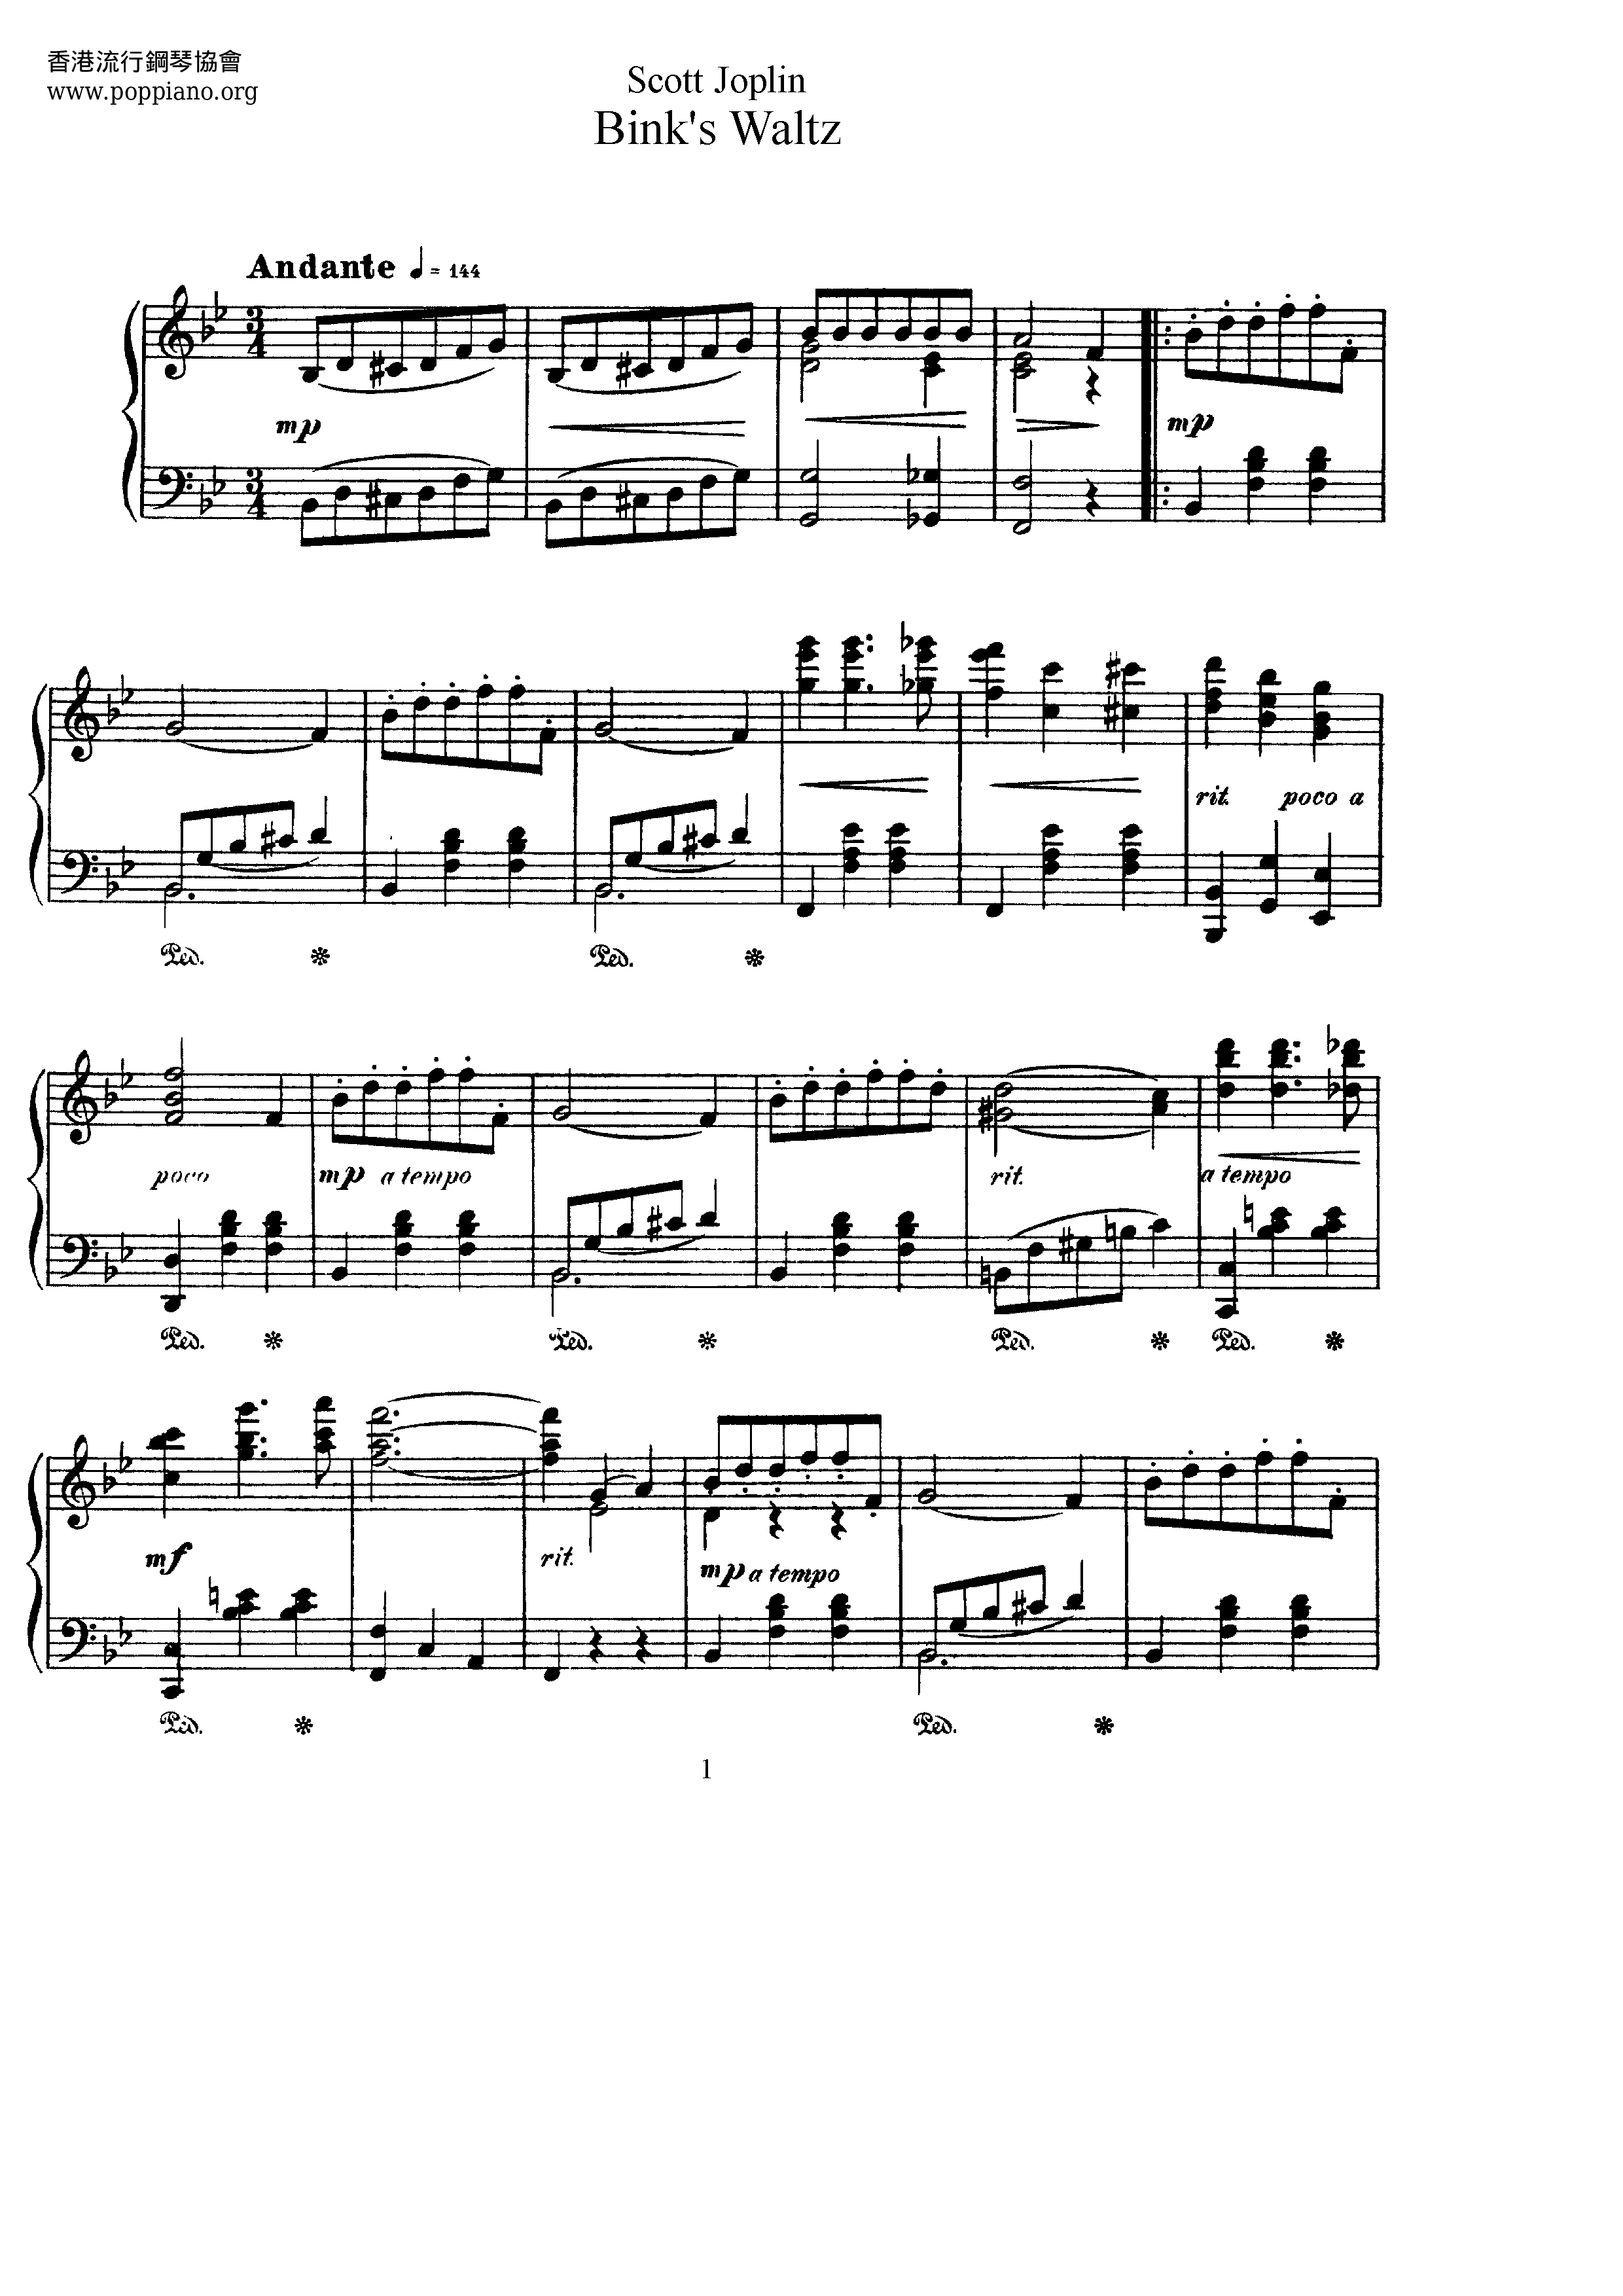 Bink's Waltz Score